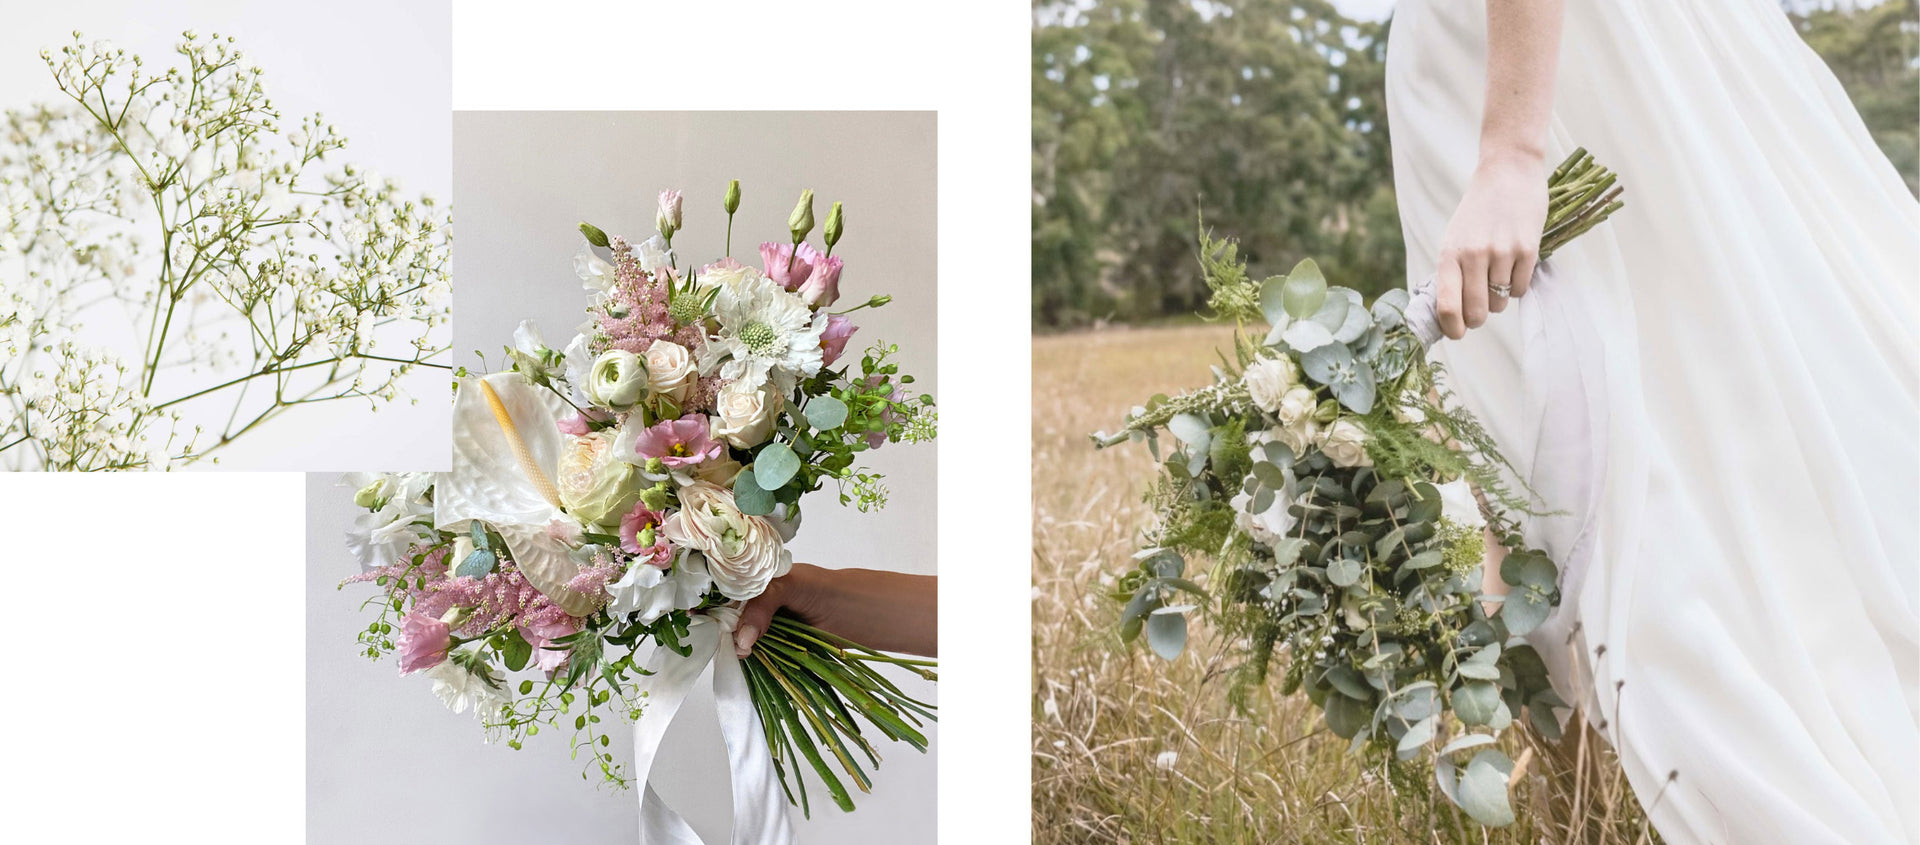 Bridal bouquet wedding flowers - LOV Flowers